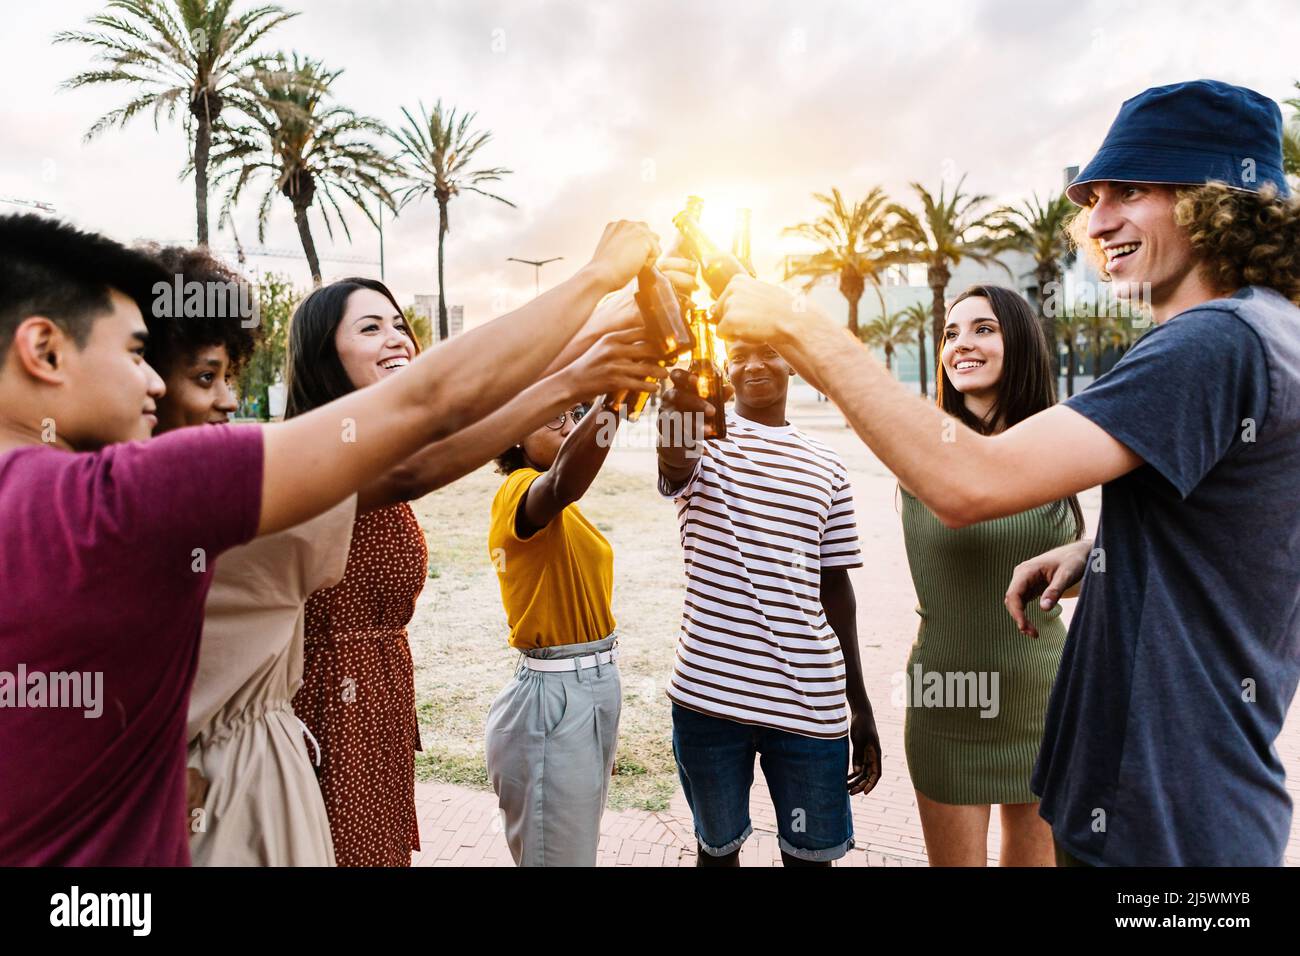 Grupo de jóvenes amigos multirraciales felices con bebidas celebrando en la fiesta de verano Foto de stock